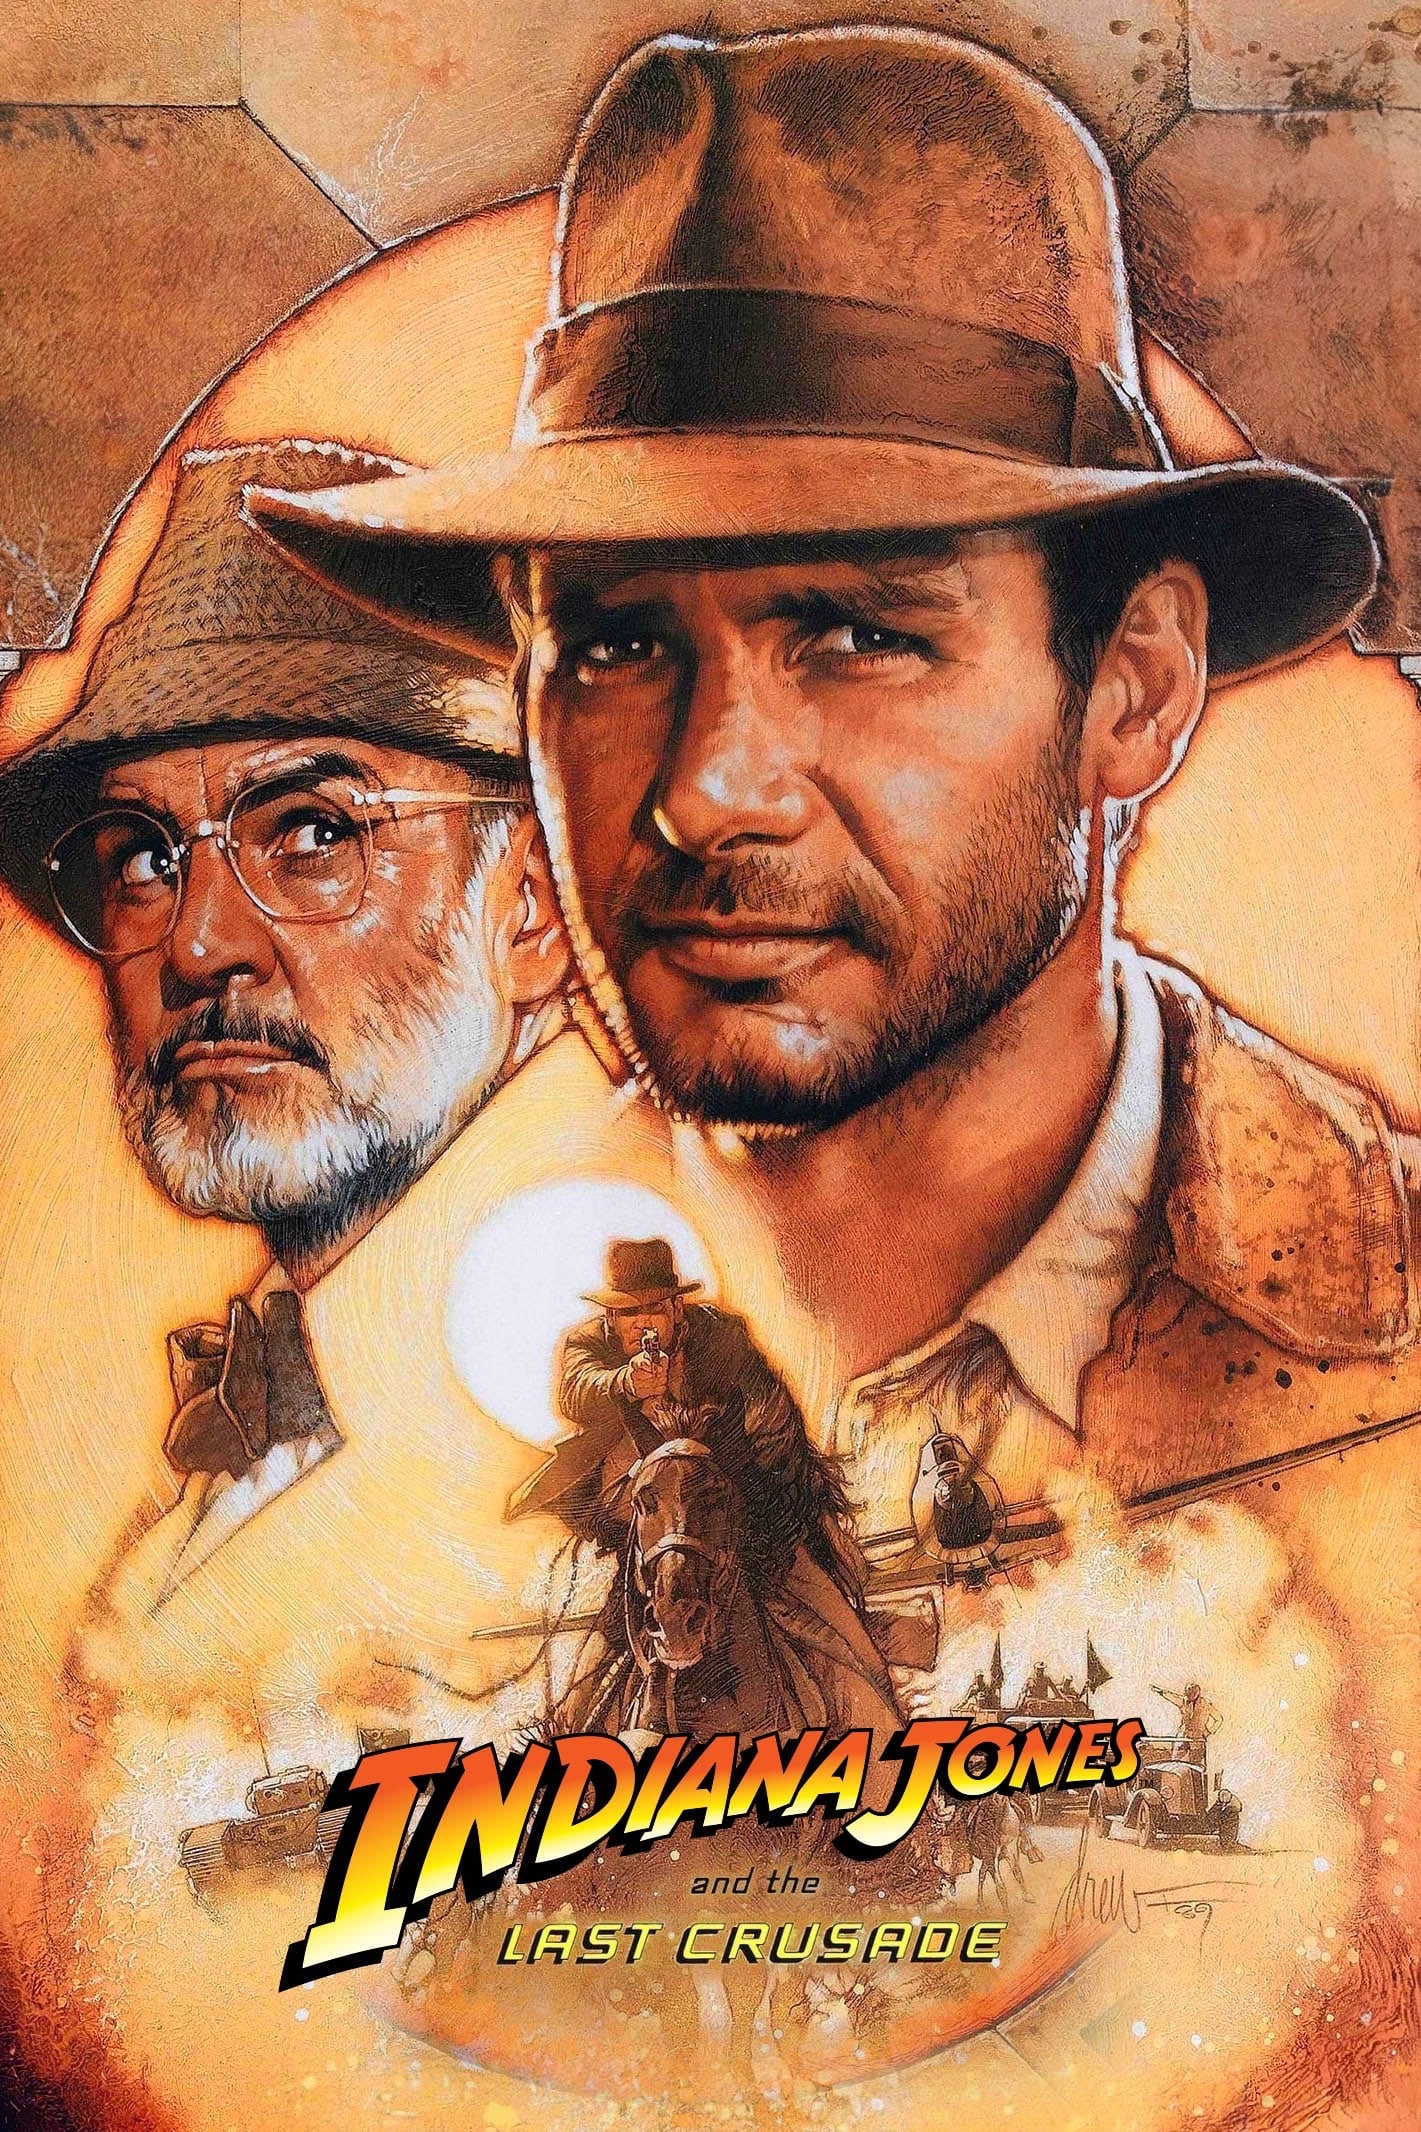 Indiana Jones und der letzte Kreuzzug (1989)